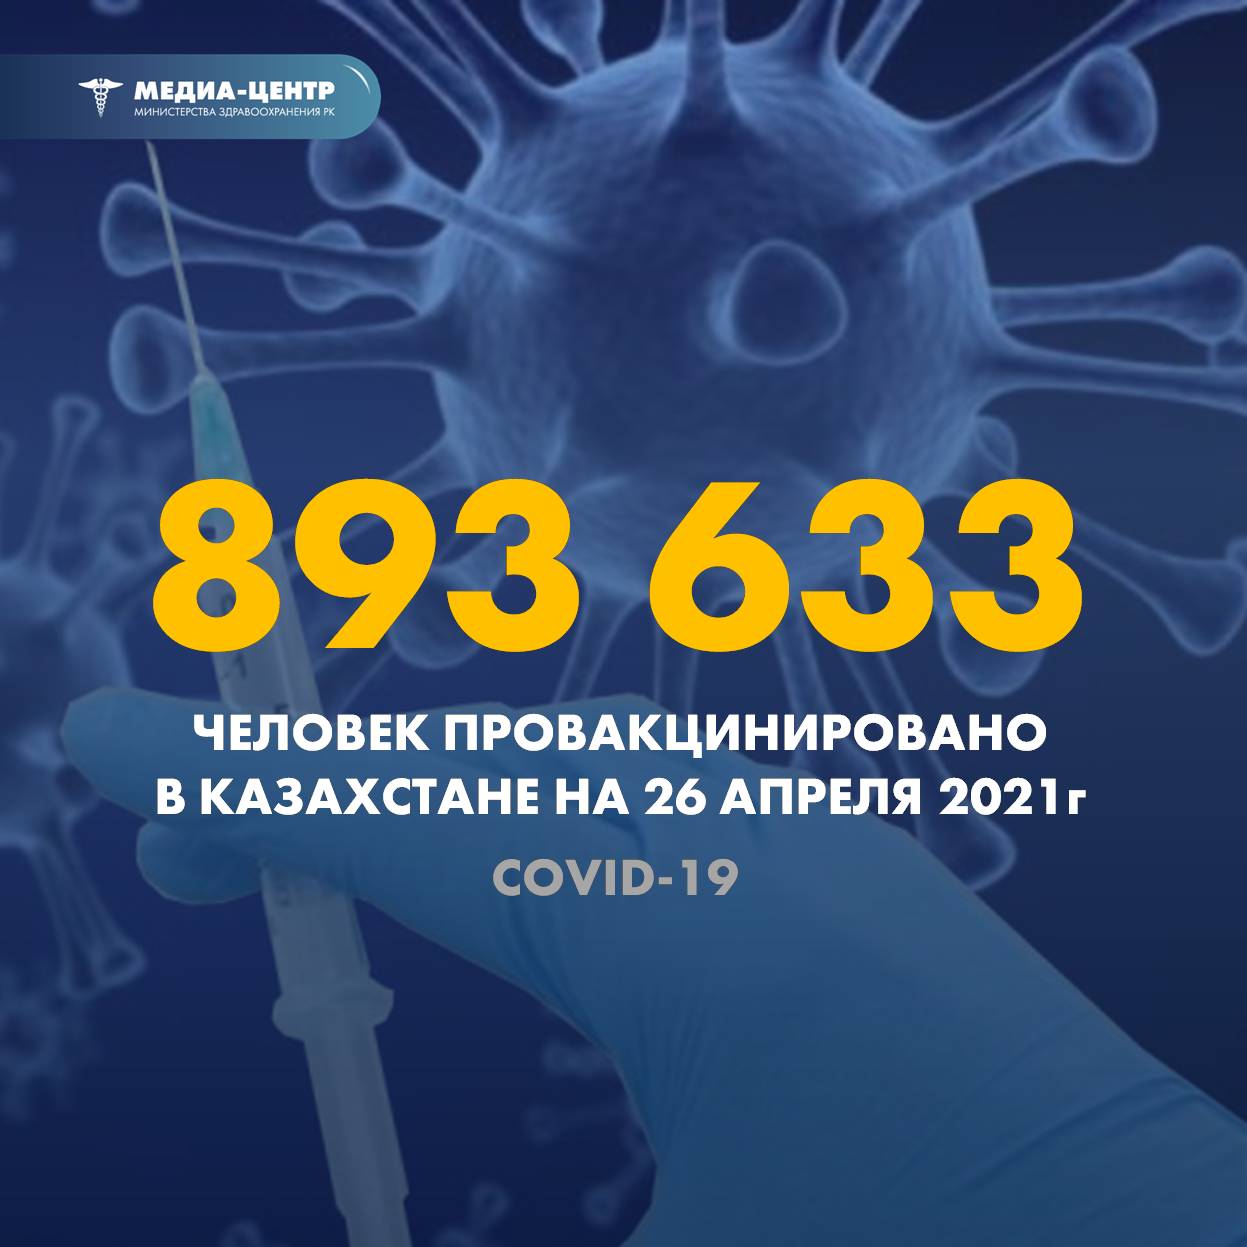 893 633 человек провакцинировано в Казахстане на 26 апреля 2021 г